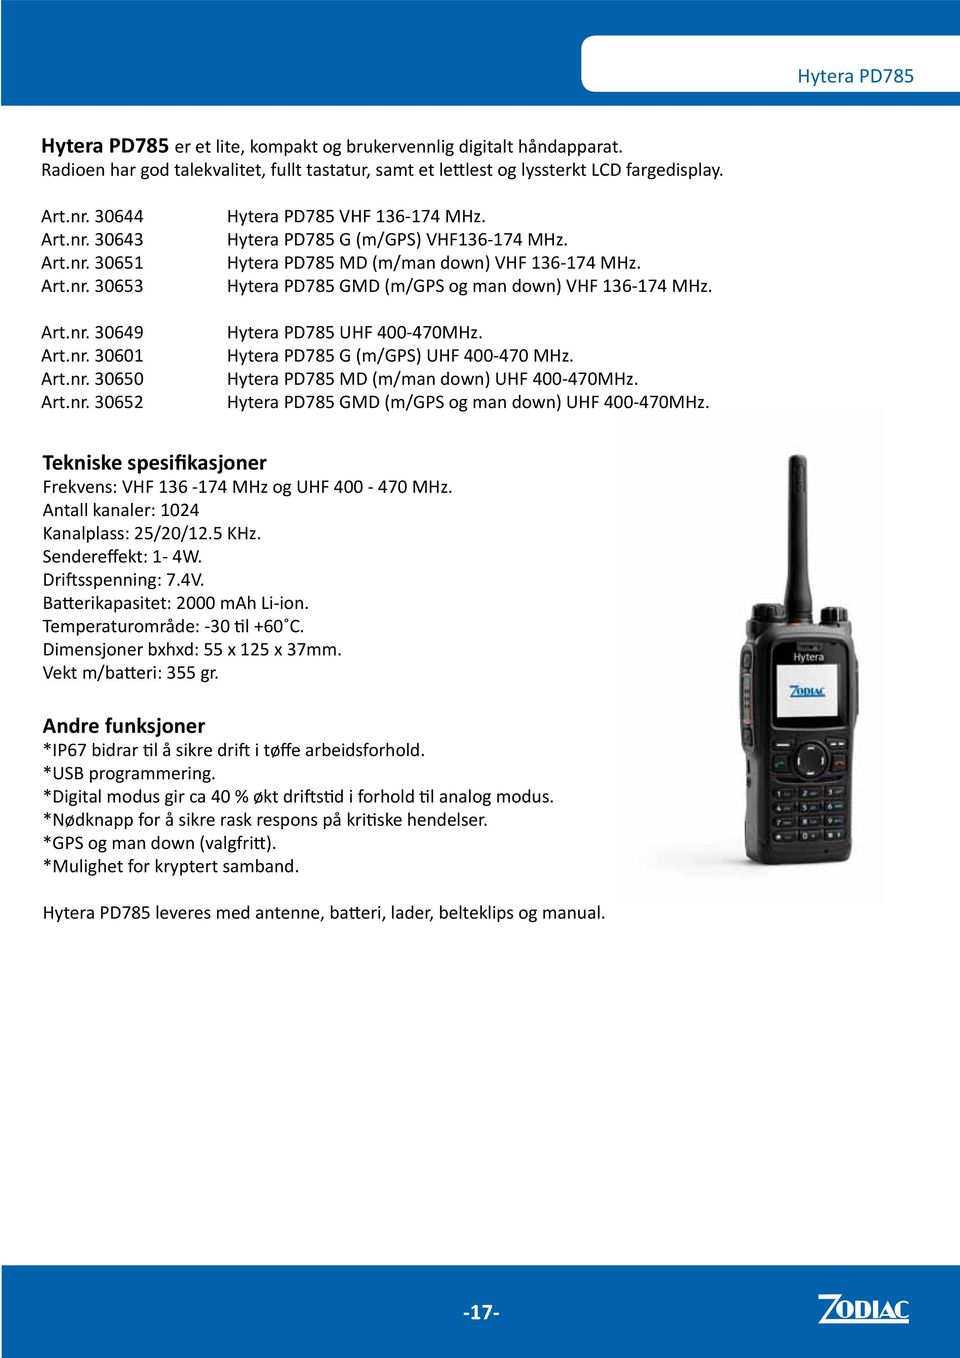 Hytera PD785 MD (m/man down) VHF 136-174 MHz. Hytera PD785 GMD (m/gps og man down) VHF 136-174 MHz. Hytera PD785 UHF 400-470MHz. Hytera PD785 G (m/gps) UHF 400-470 MHz.